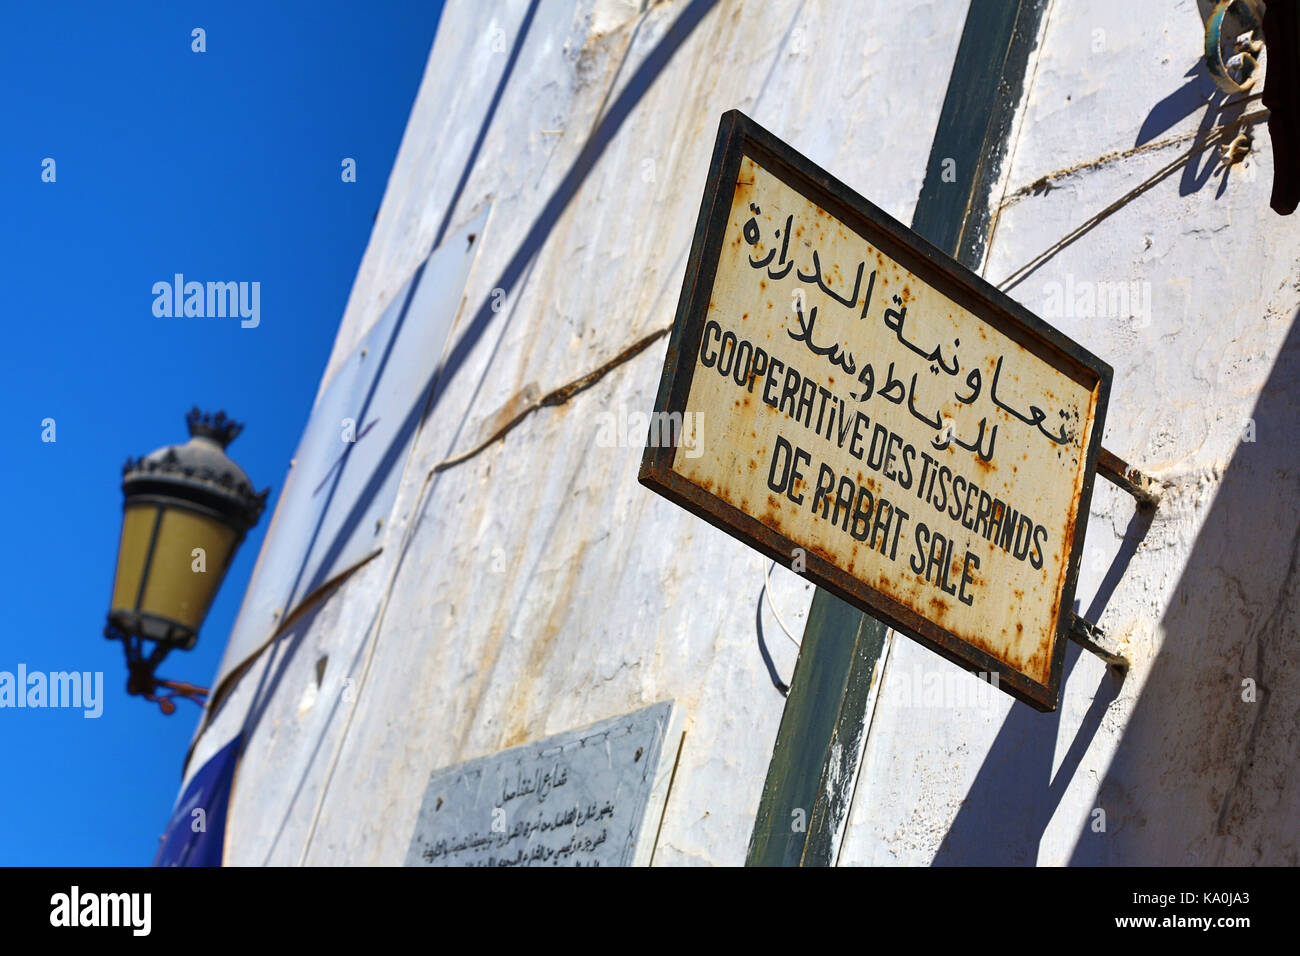 La Boutique Sign et l'éclairage public en français et en arabe dans les médias à Rabat, Maroc Banque D'Images